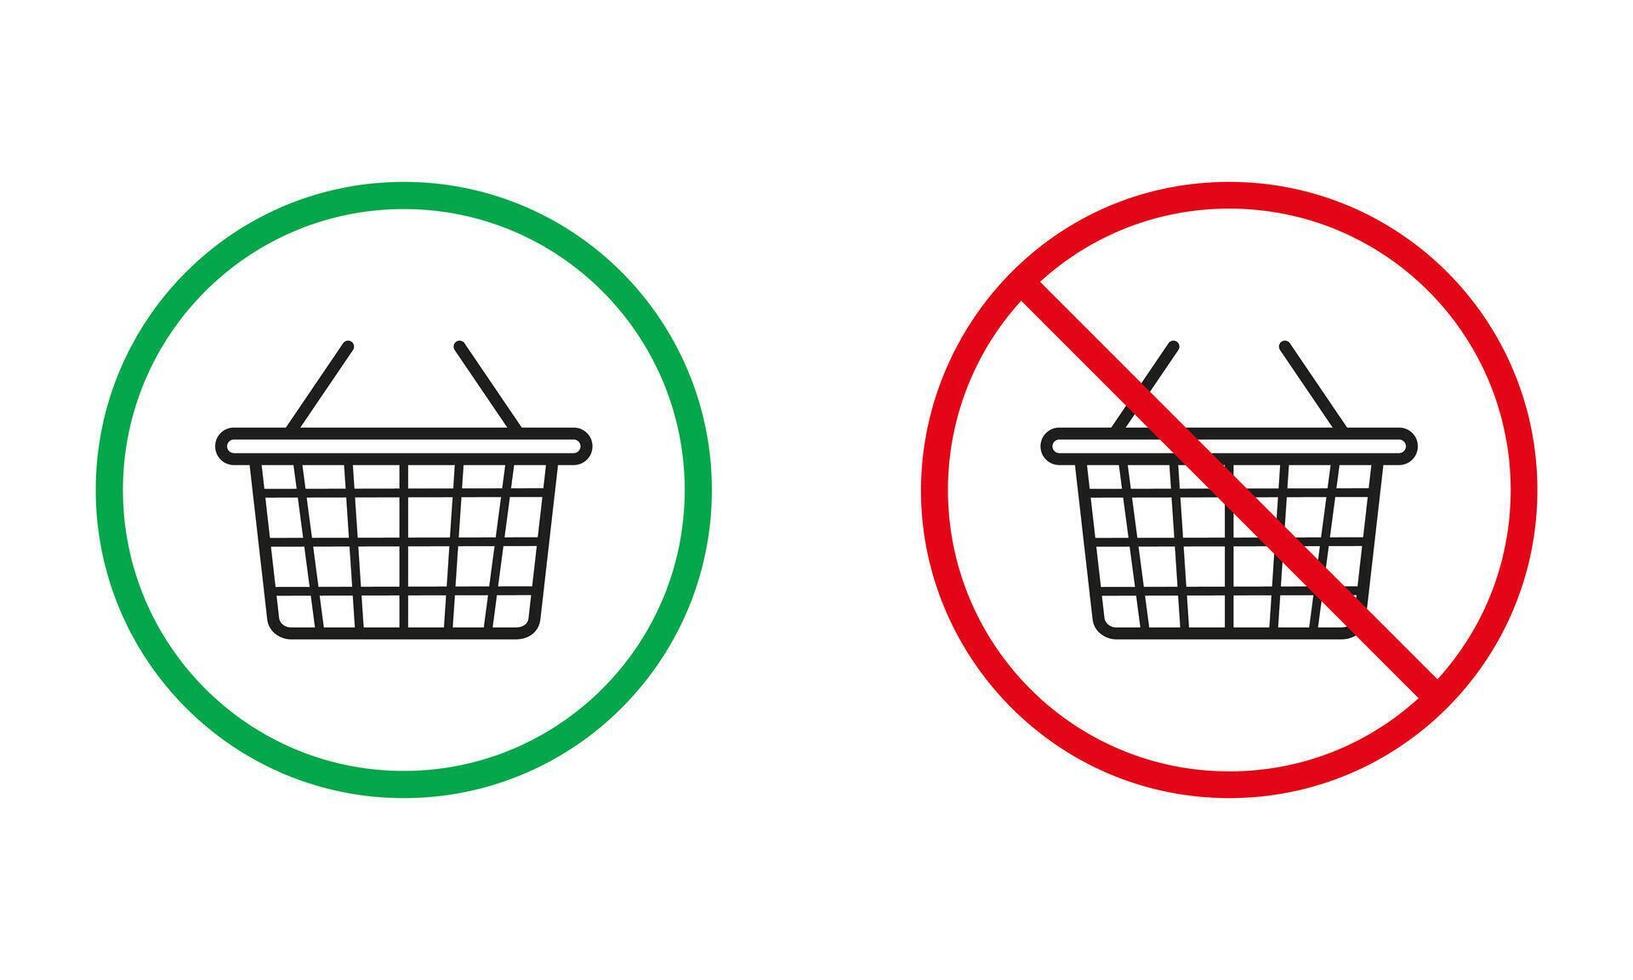 boodschappen doen kar waarschuwing tekens. trolley mand silhouet pictogrammen set. online markt toegestaan, kopen in online supermarkt verboden symbolen. geïsoleerd vector illustratie